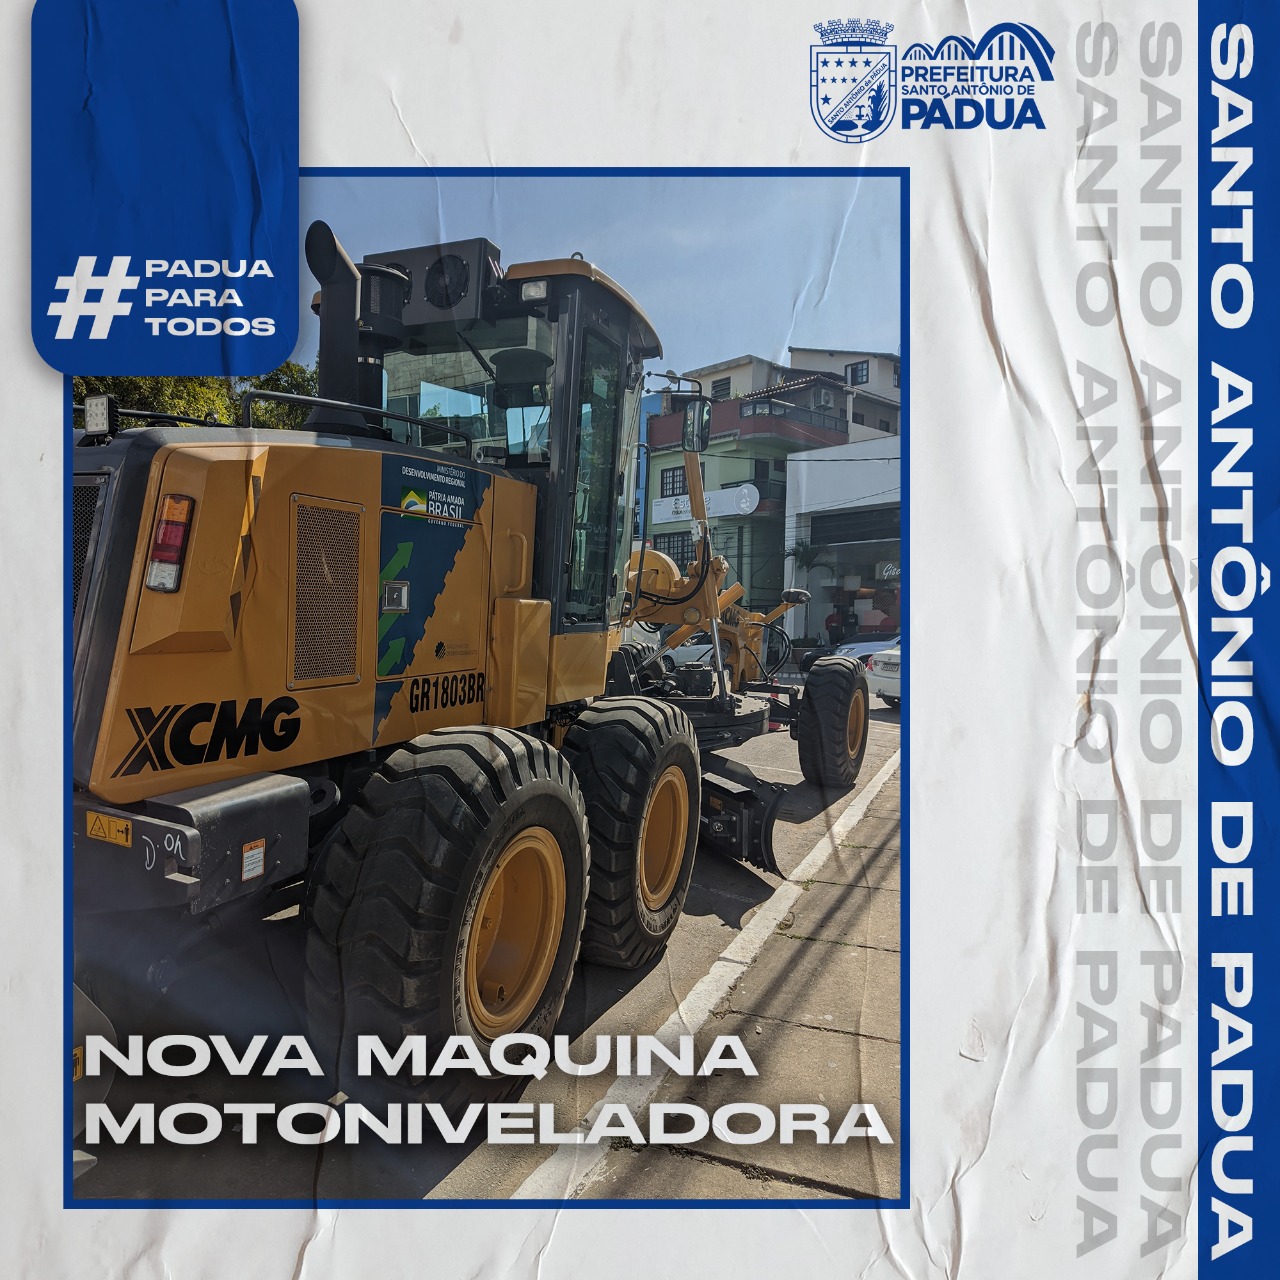 https://www.santoantoniodepadua.rj.gov.br/arquivos/2022-06-01/motoniveladora.jpg